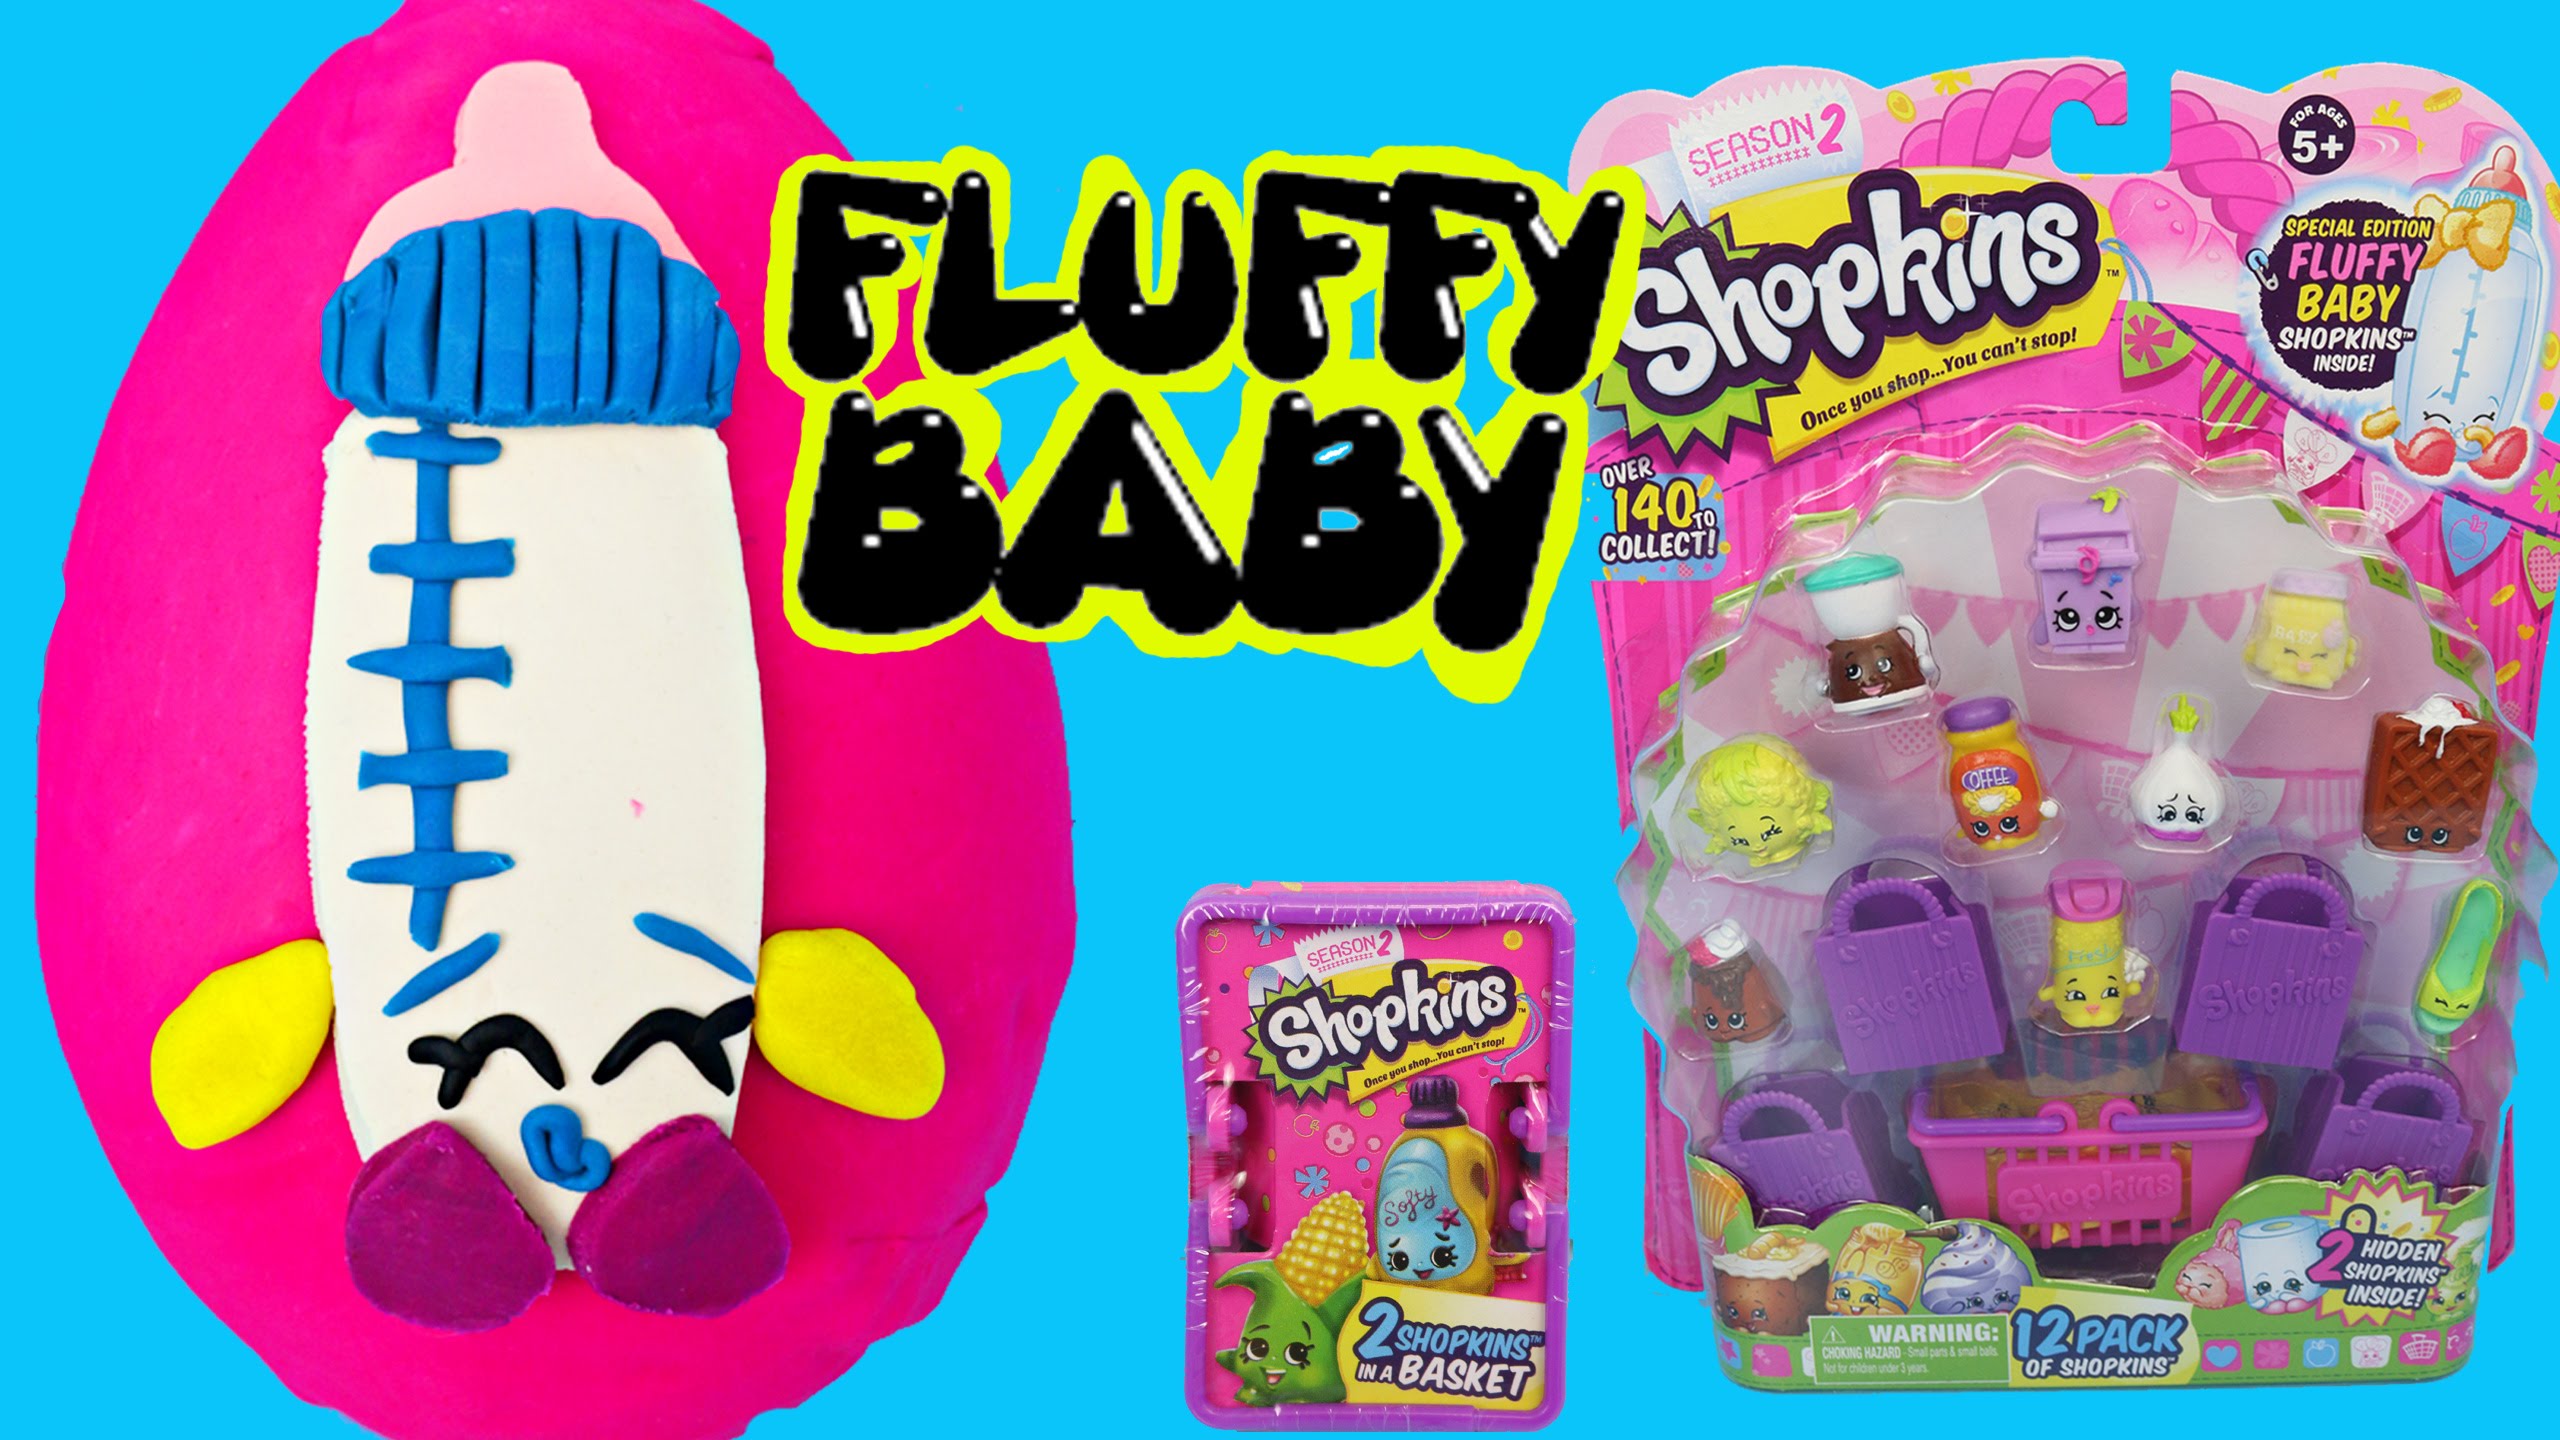 Giant PLAY DOH EGG Shopkins Fluffy Baby Egg 12 Pack Season 2560x1440